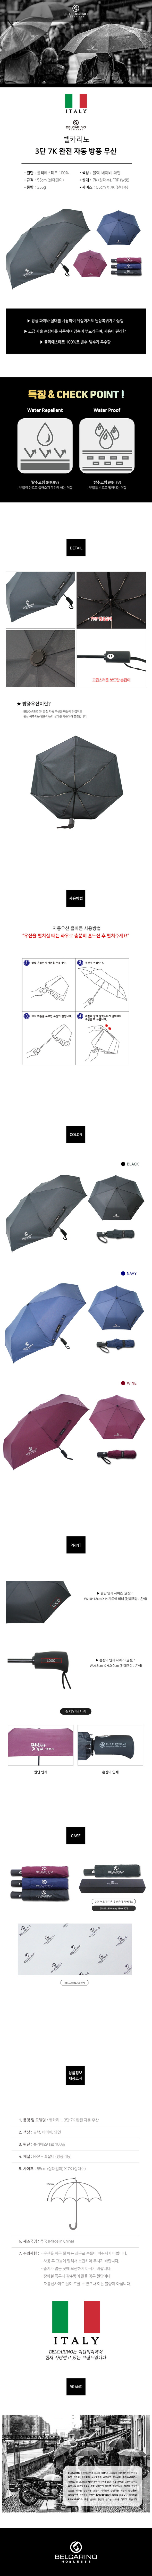 [벨카리노] 3단 7K 완전 자동 우산